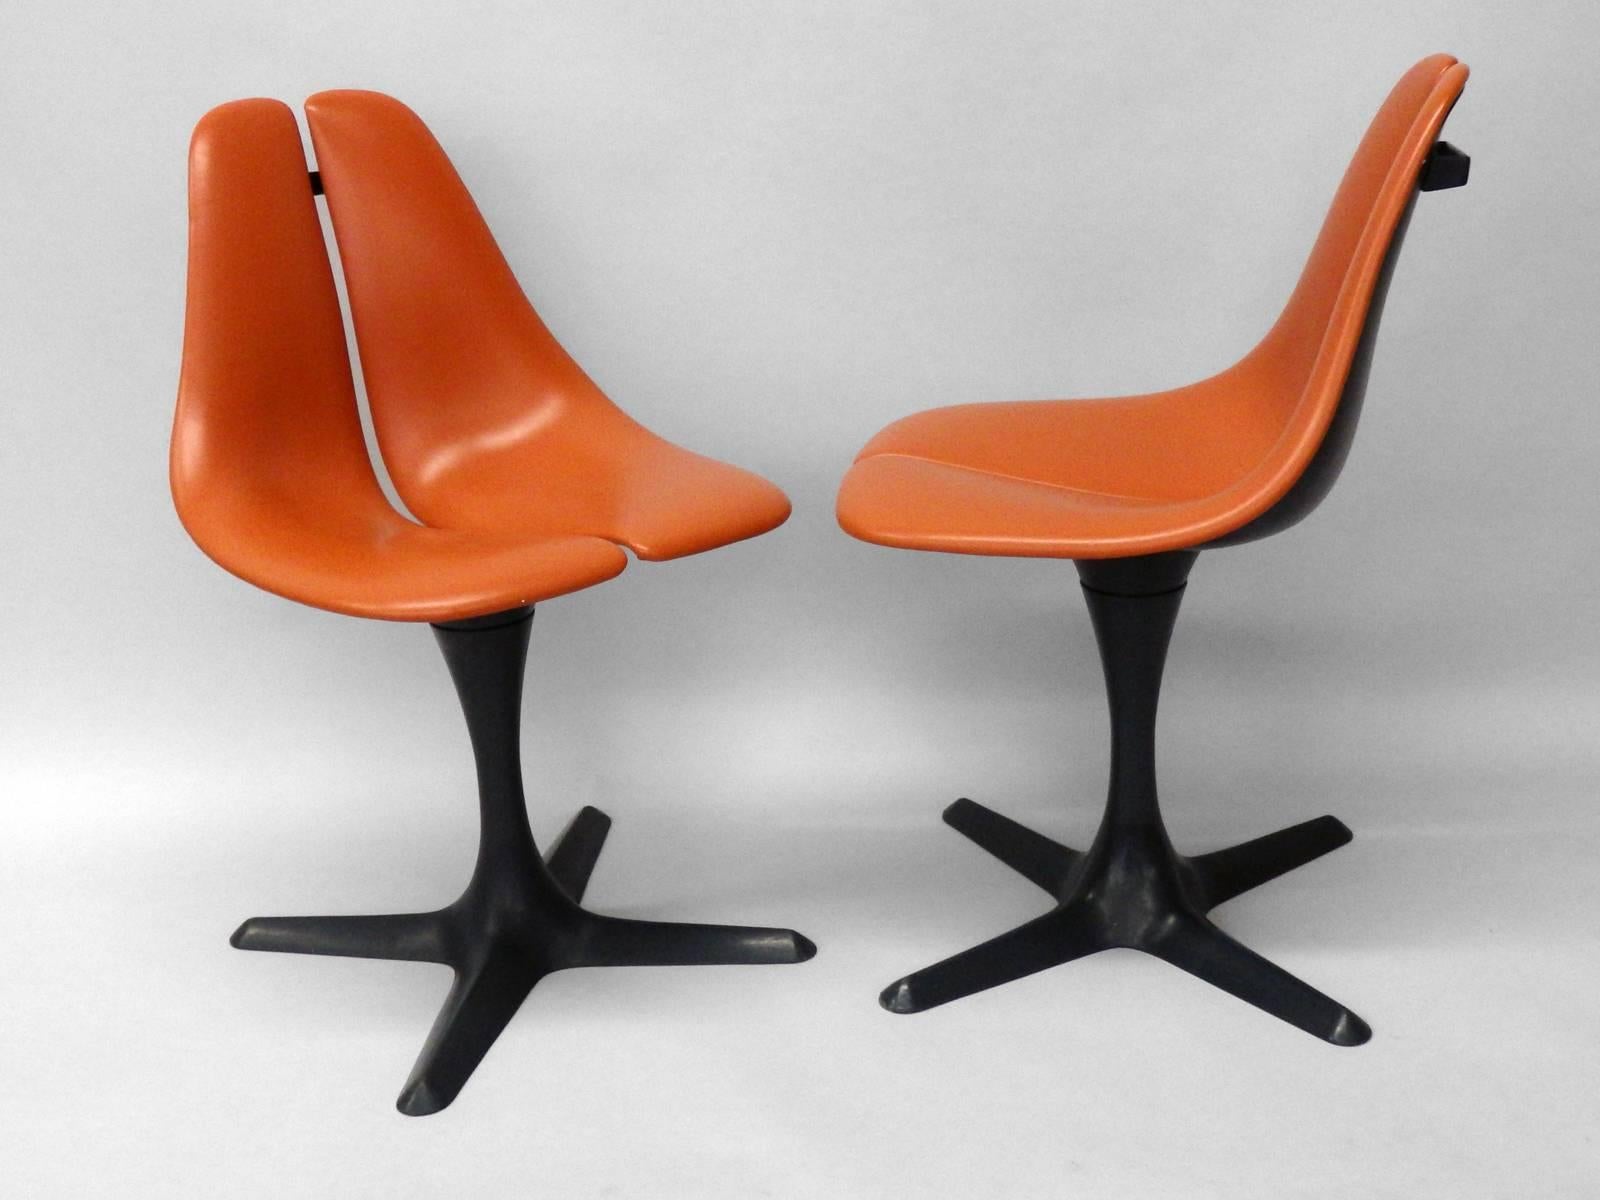 Ce n'est pas l'habituelle chaise Saarinen Knoll de Burke. Cette paire de chaises à piédestal est d'une conception plus originale. Siège en vinyle orange sur fibre de verre, supporté par une base pivotante en X.   La paire conçue par Maurice Burke